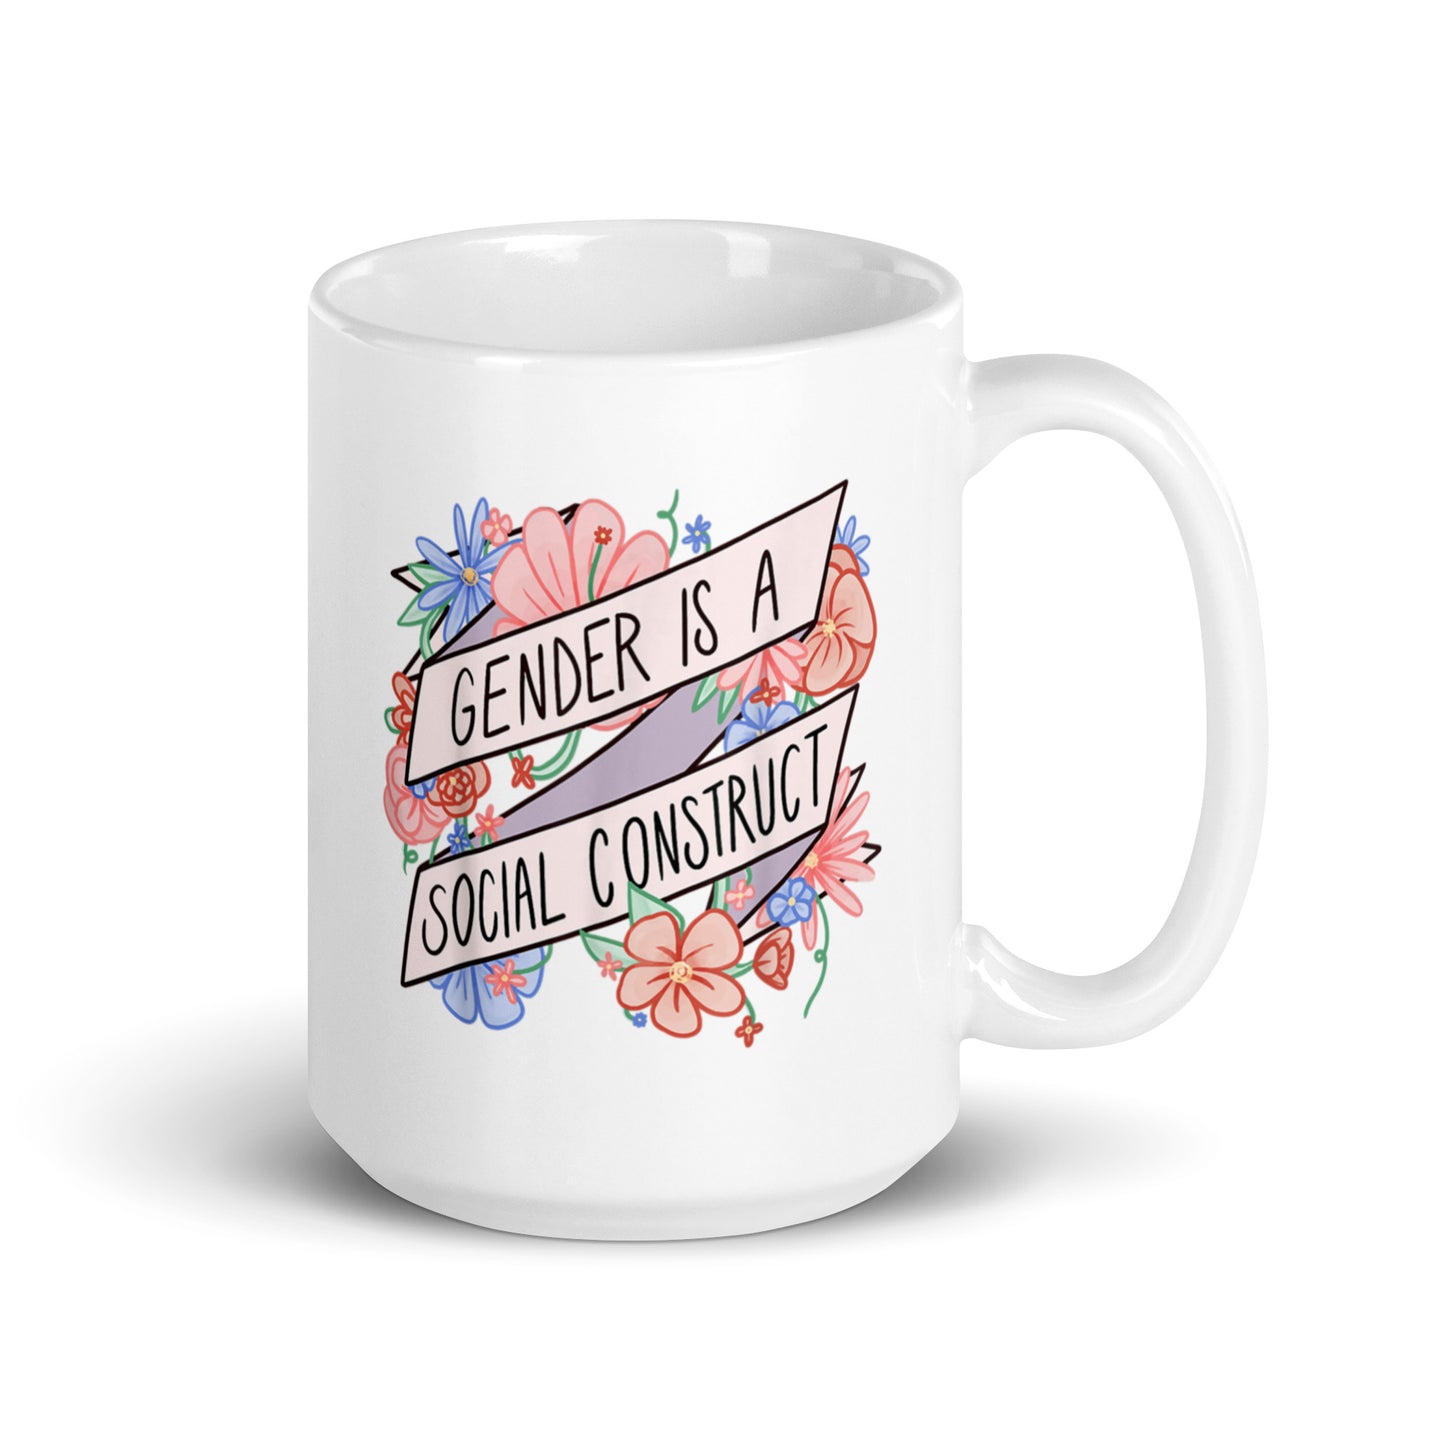 Gender is Social Construct Mug